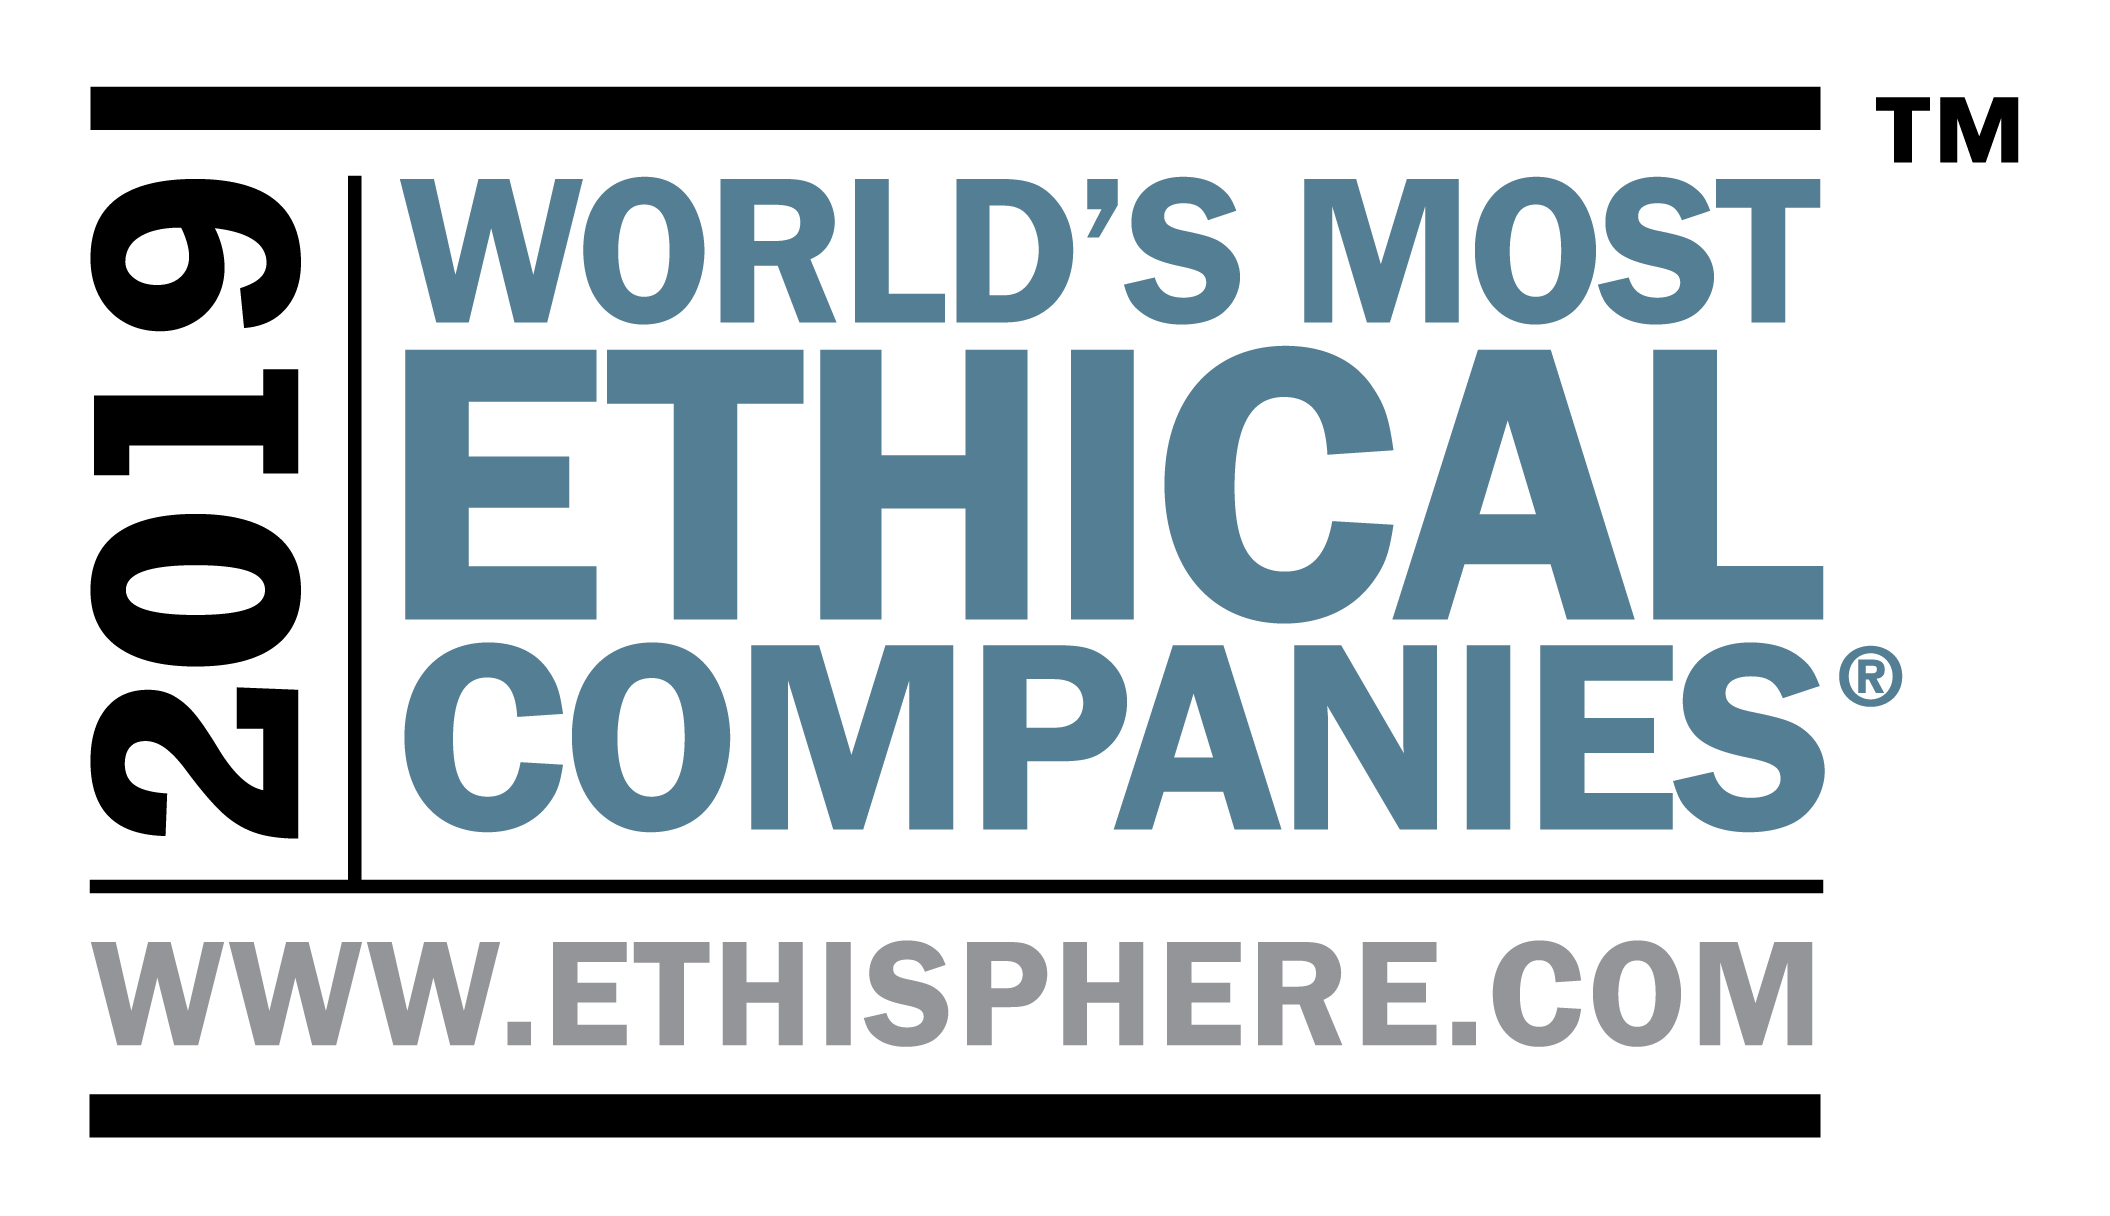 ManpowerGroup, diez años como “Compañía más Ética del mundo”